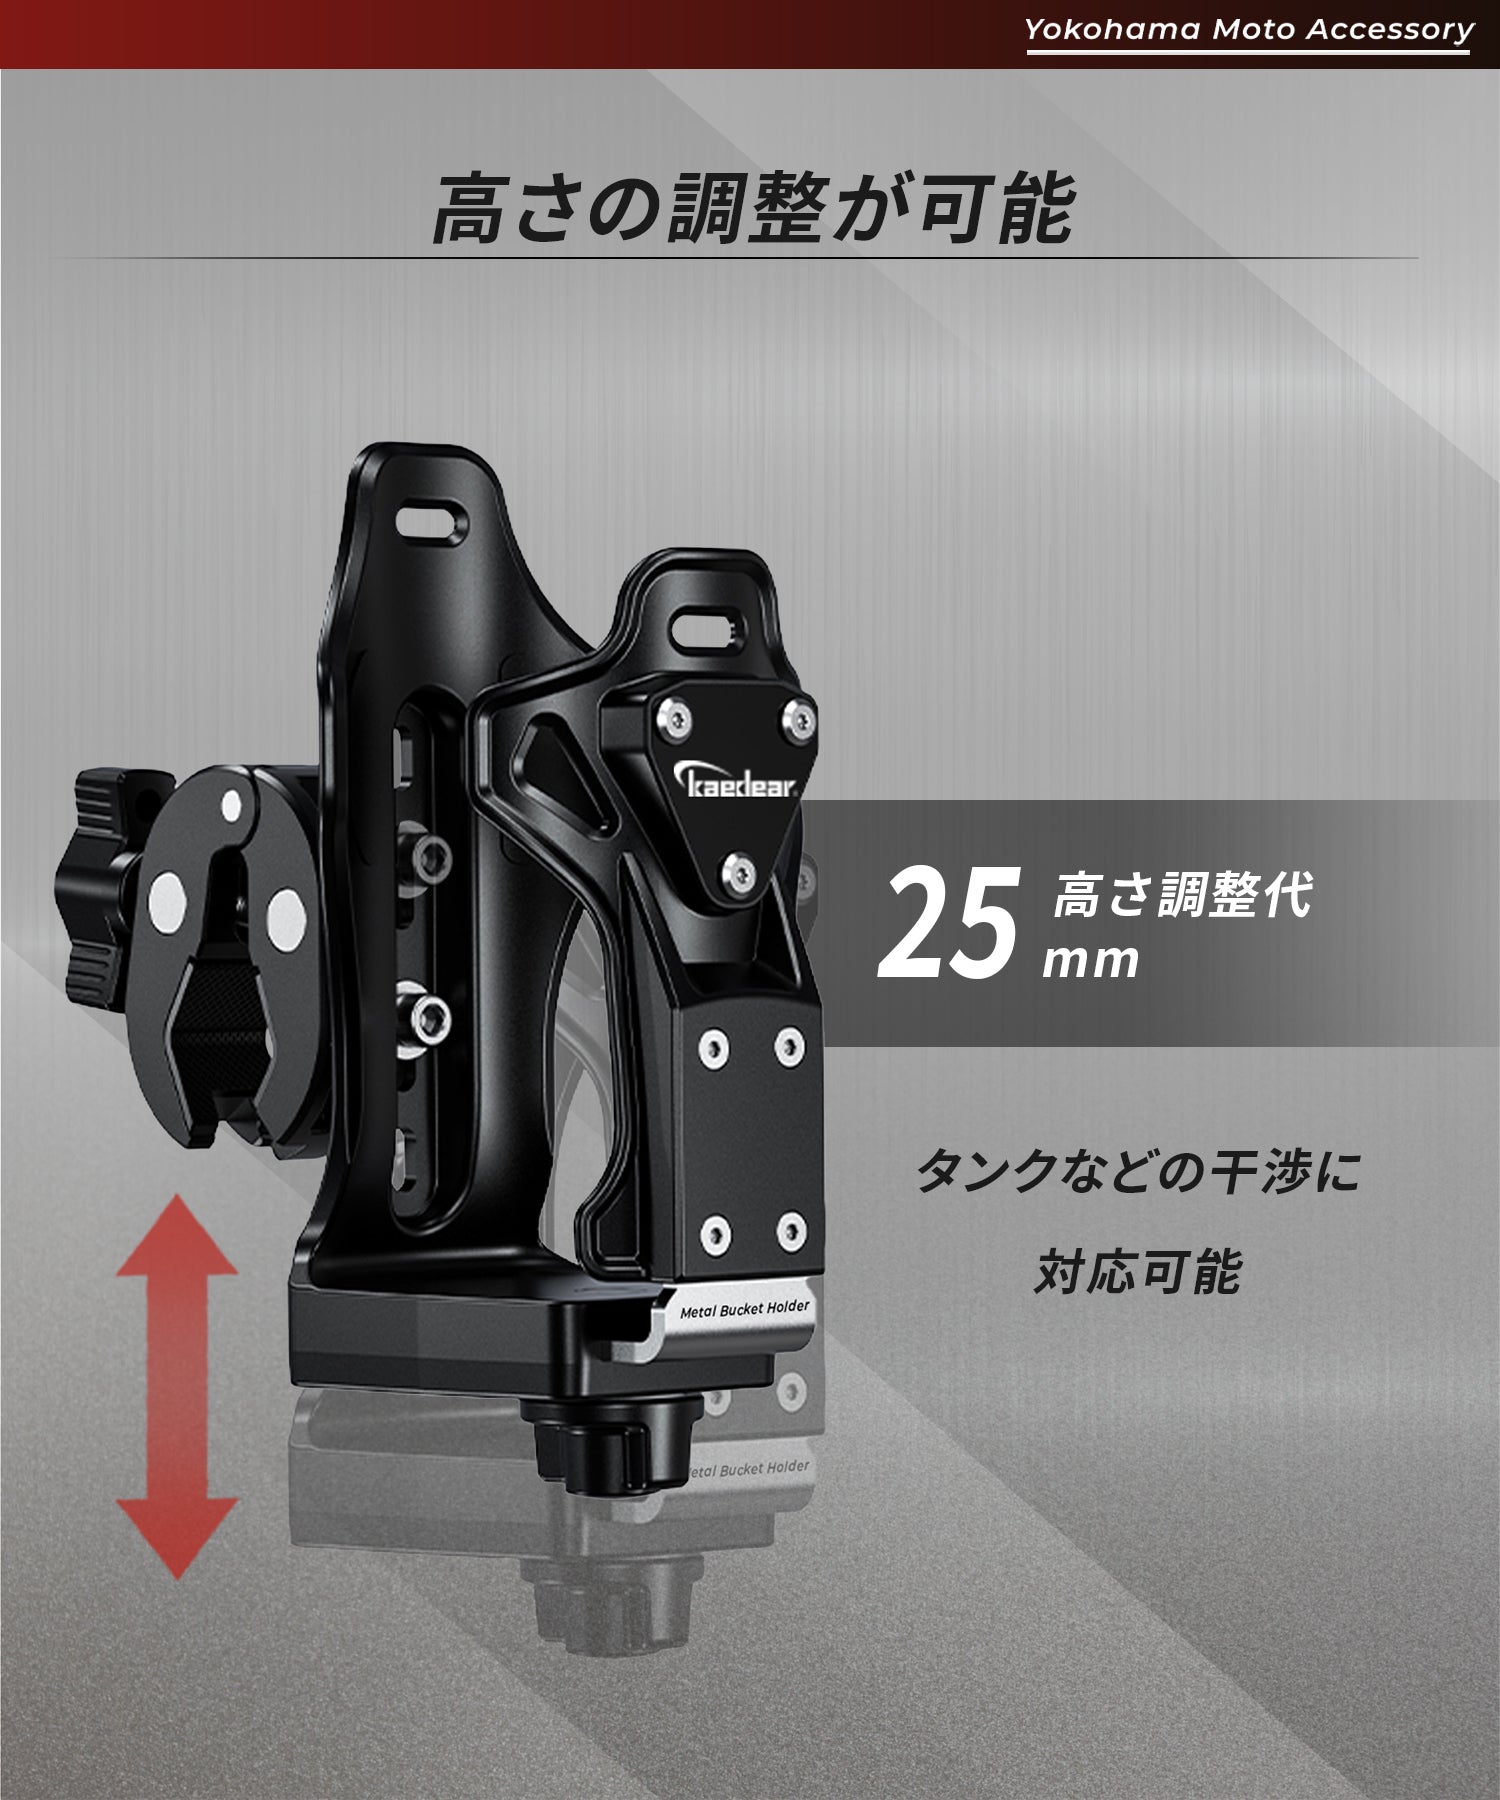 メタルバケットホルダー KDR-M21-3 – 株式会社Kaedear【カエディア公式】Yokohama Moto Accessory